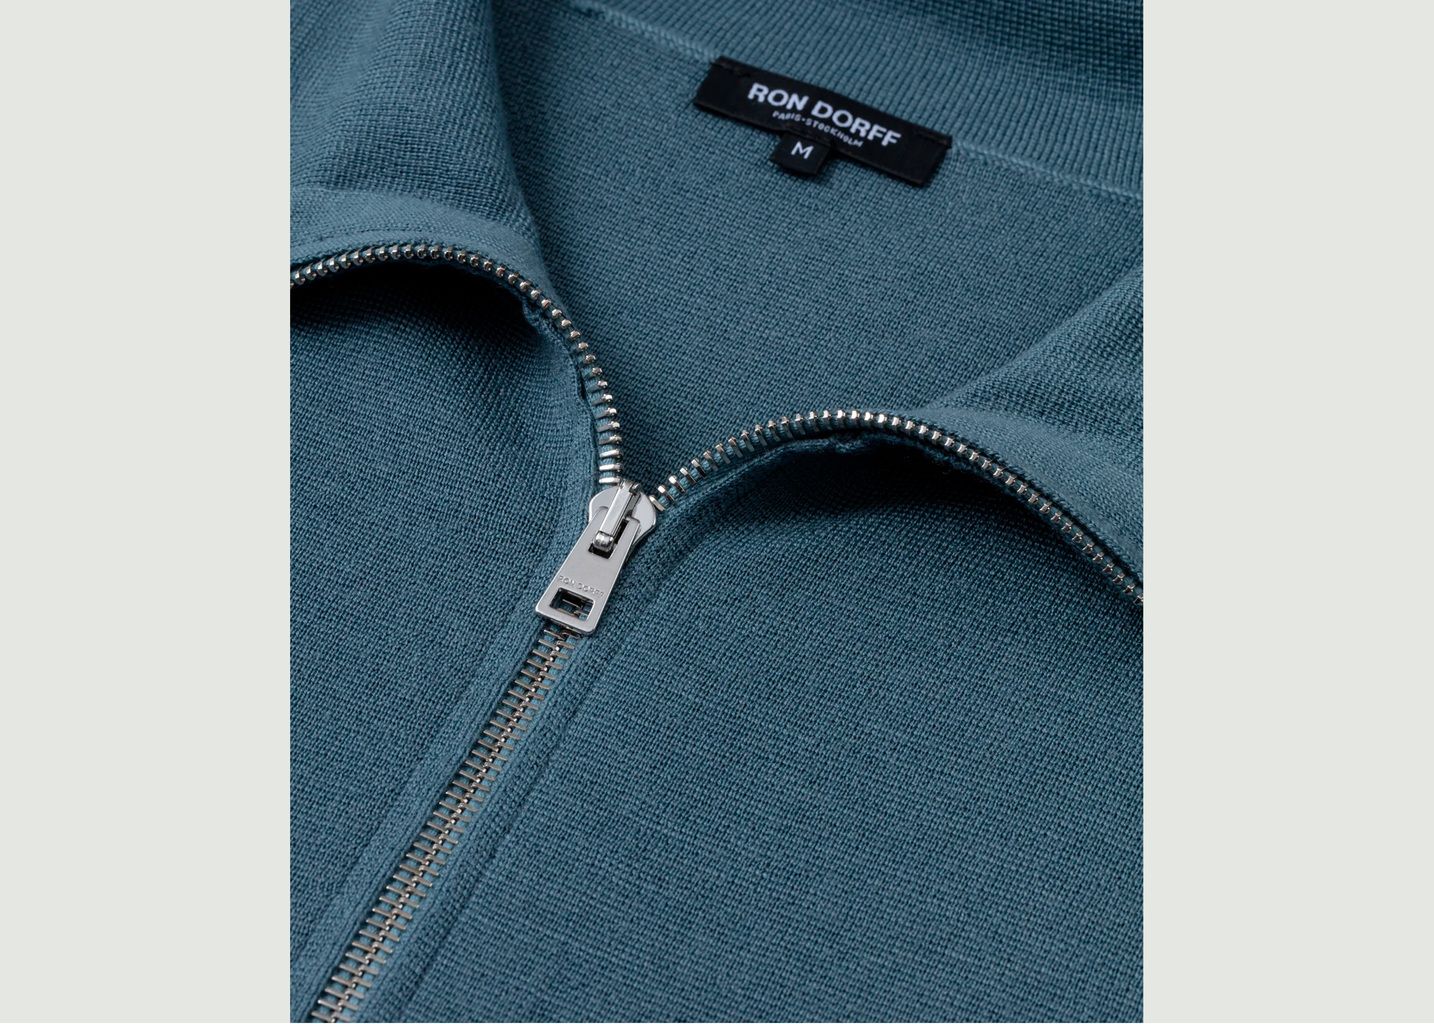 Milano Wool Jacket - Ron Dorff